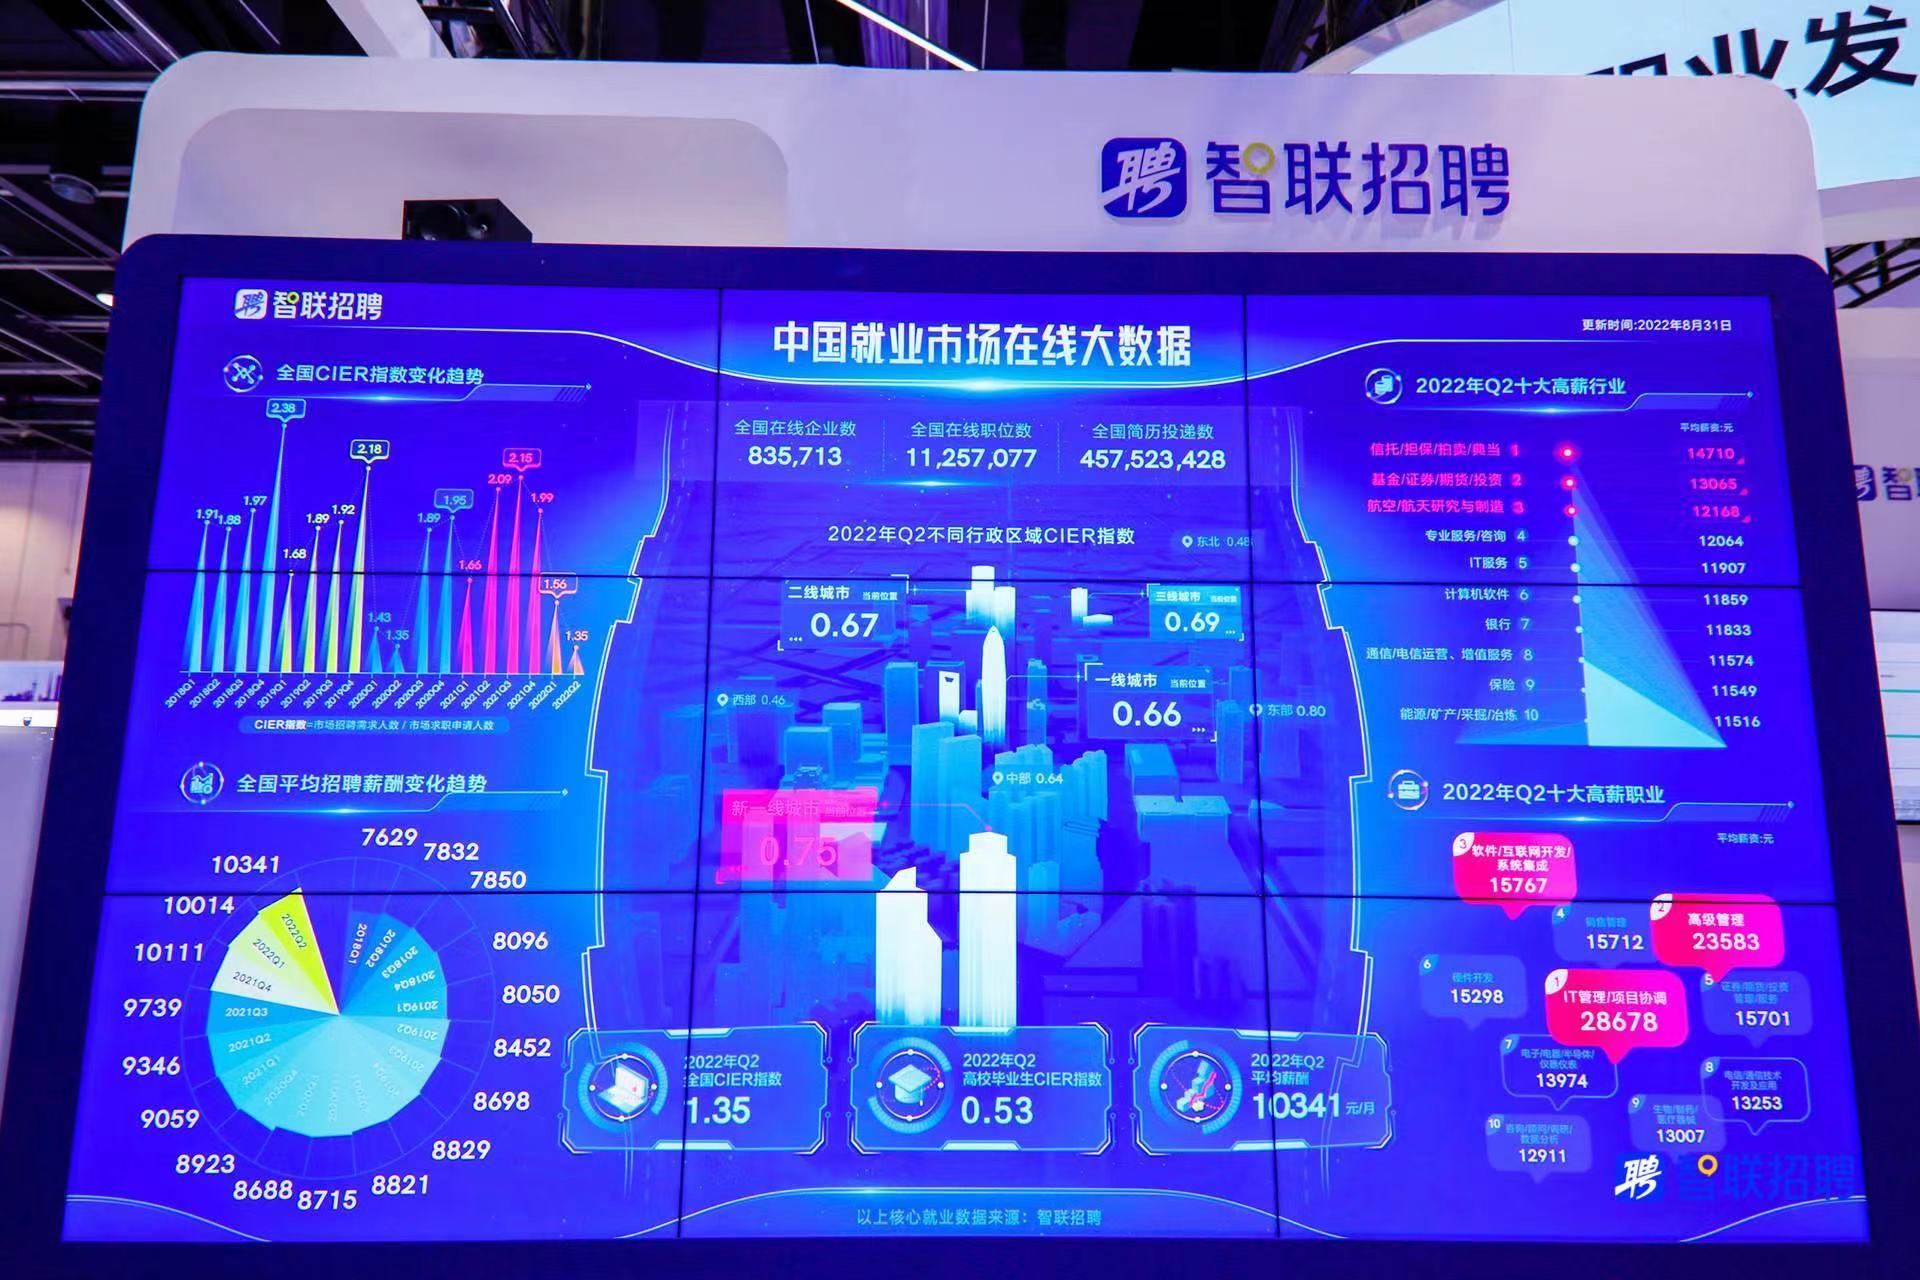 参观者可以通过就业大数据屏浏览“中国就业市场在线大数据”。 韩秉